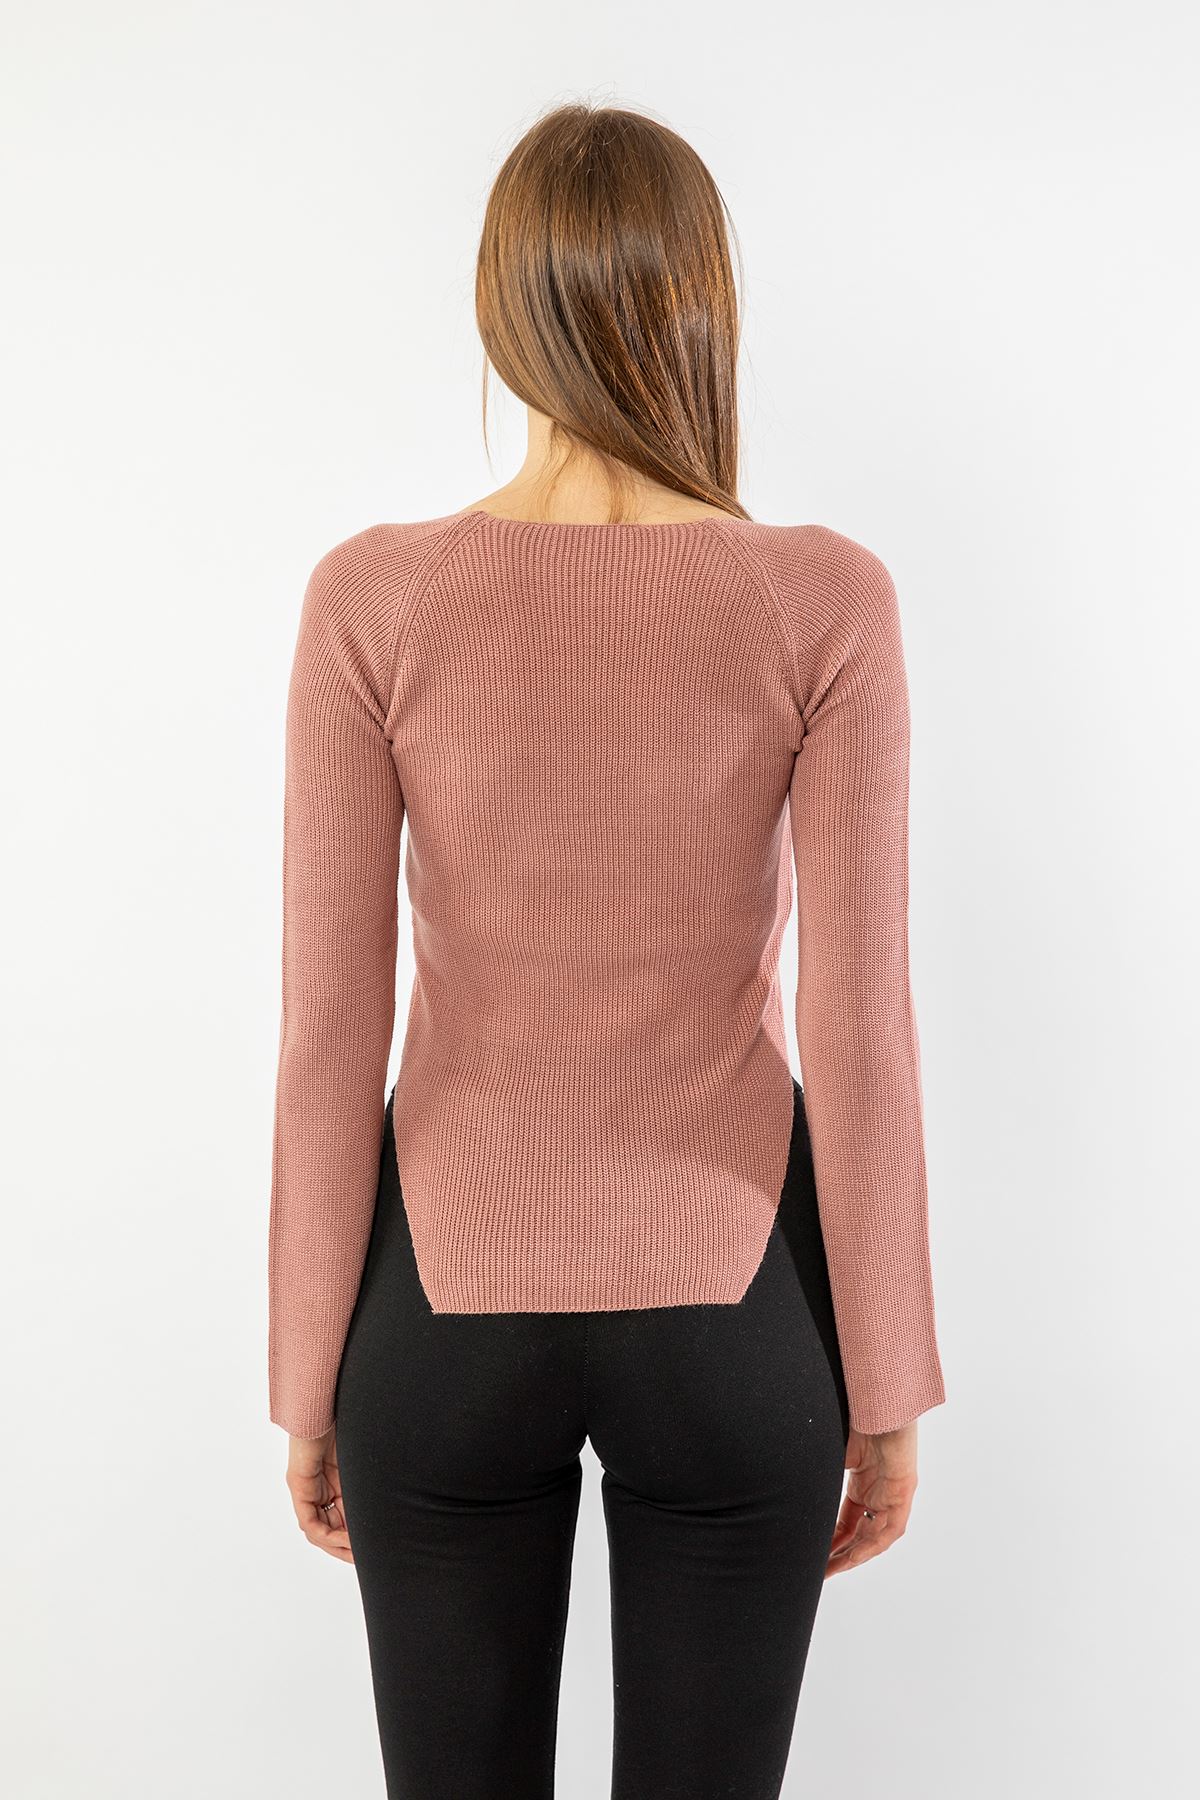 Knitwear Fabric Queen Anna Neck Short Tight Fit Asymmetric Women Sweater - Light Pink